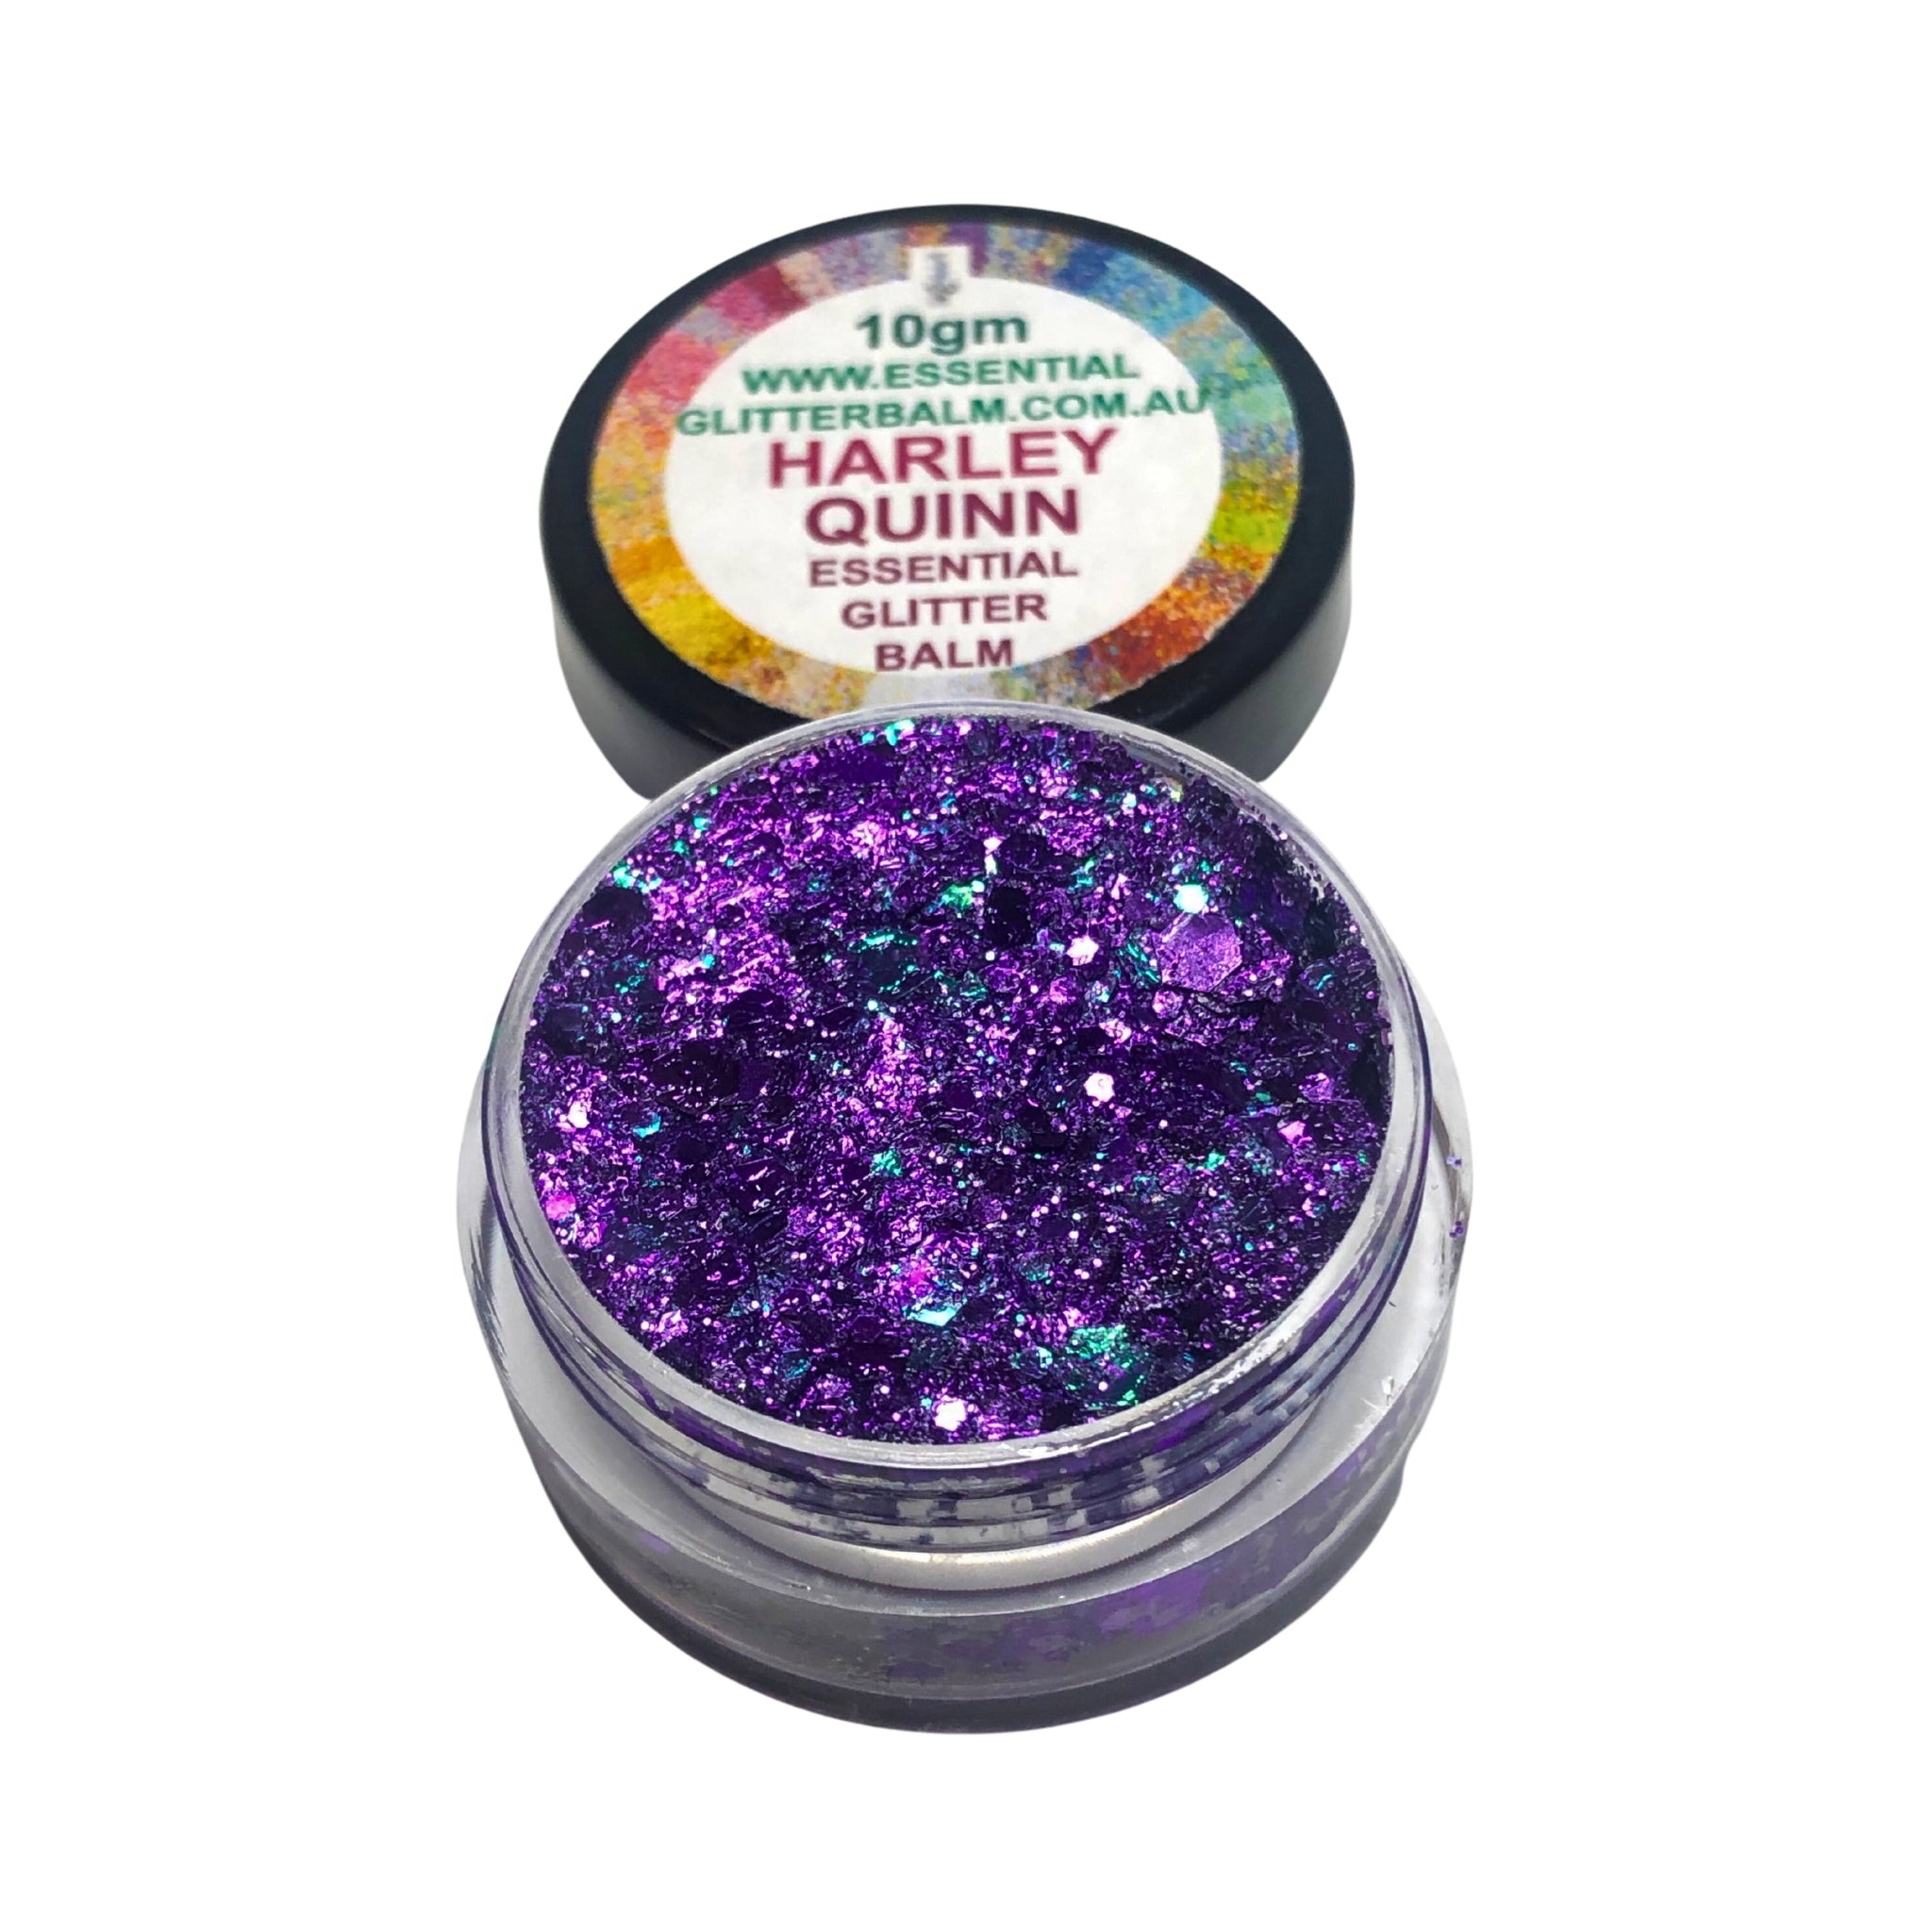 Essential Glitter Balm - HARLEY QUINN